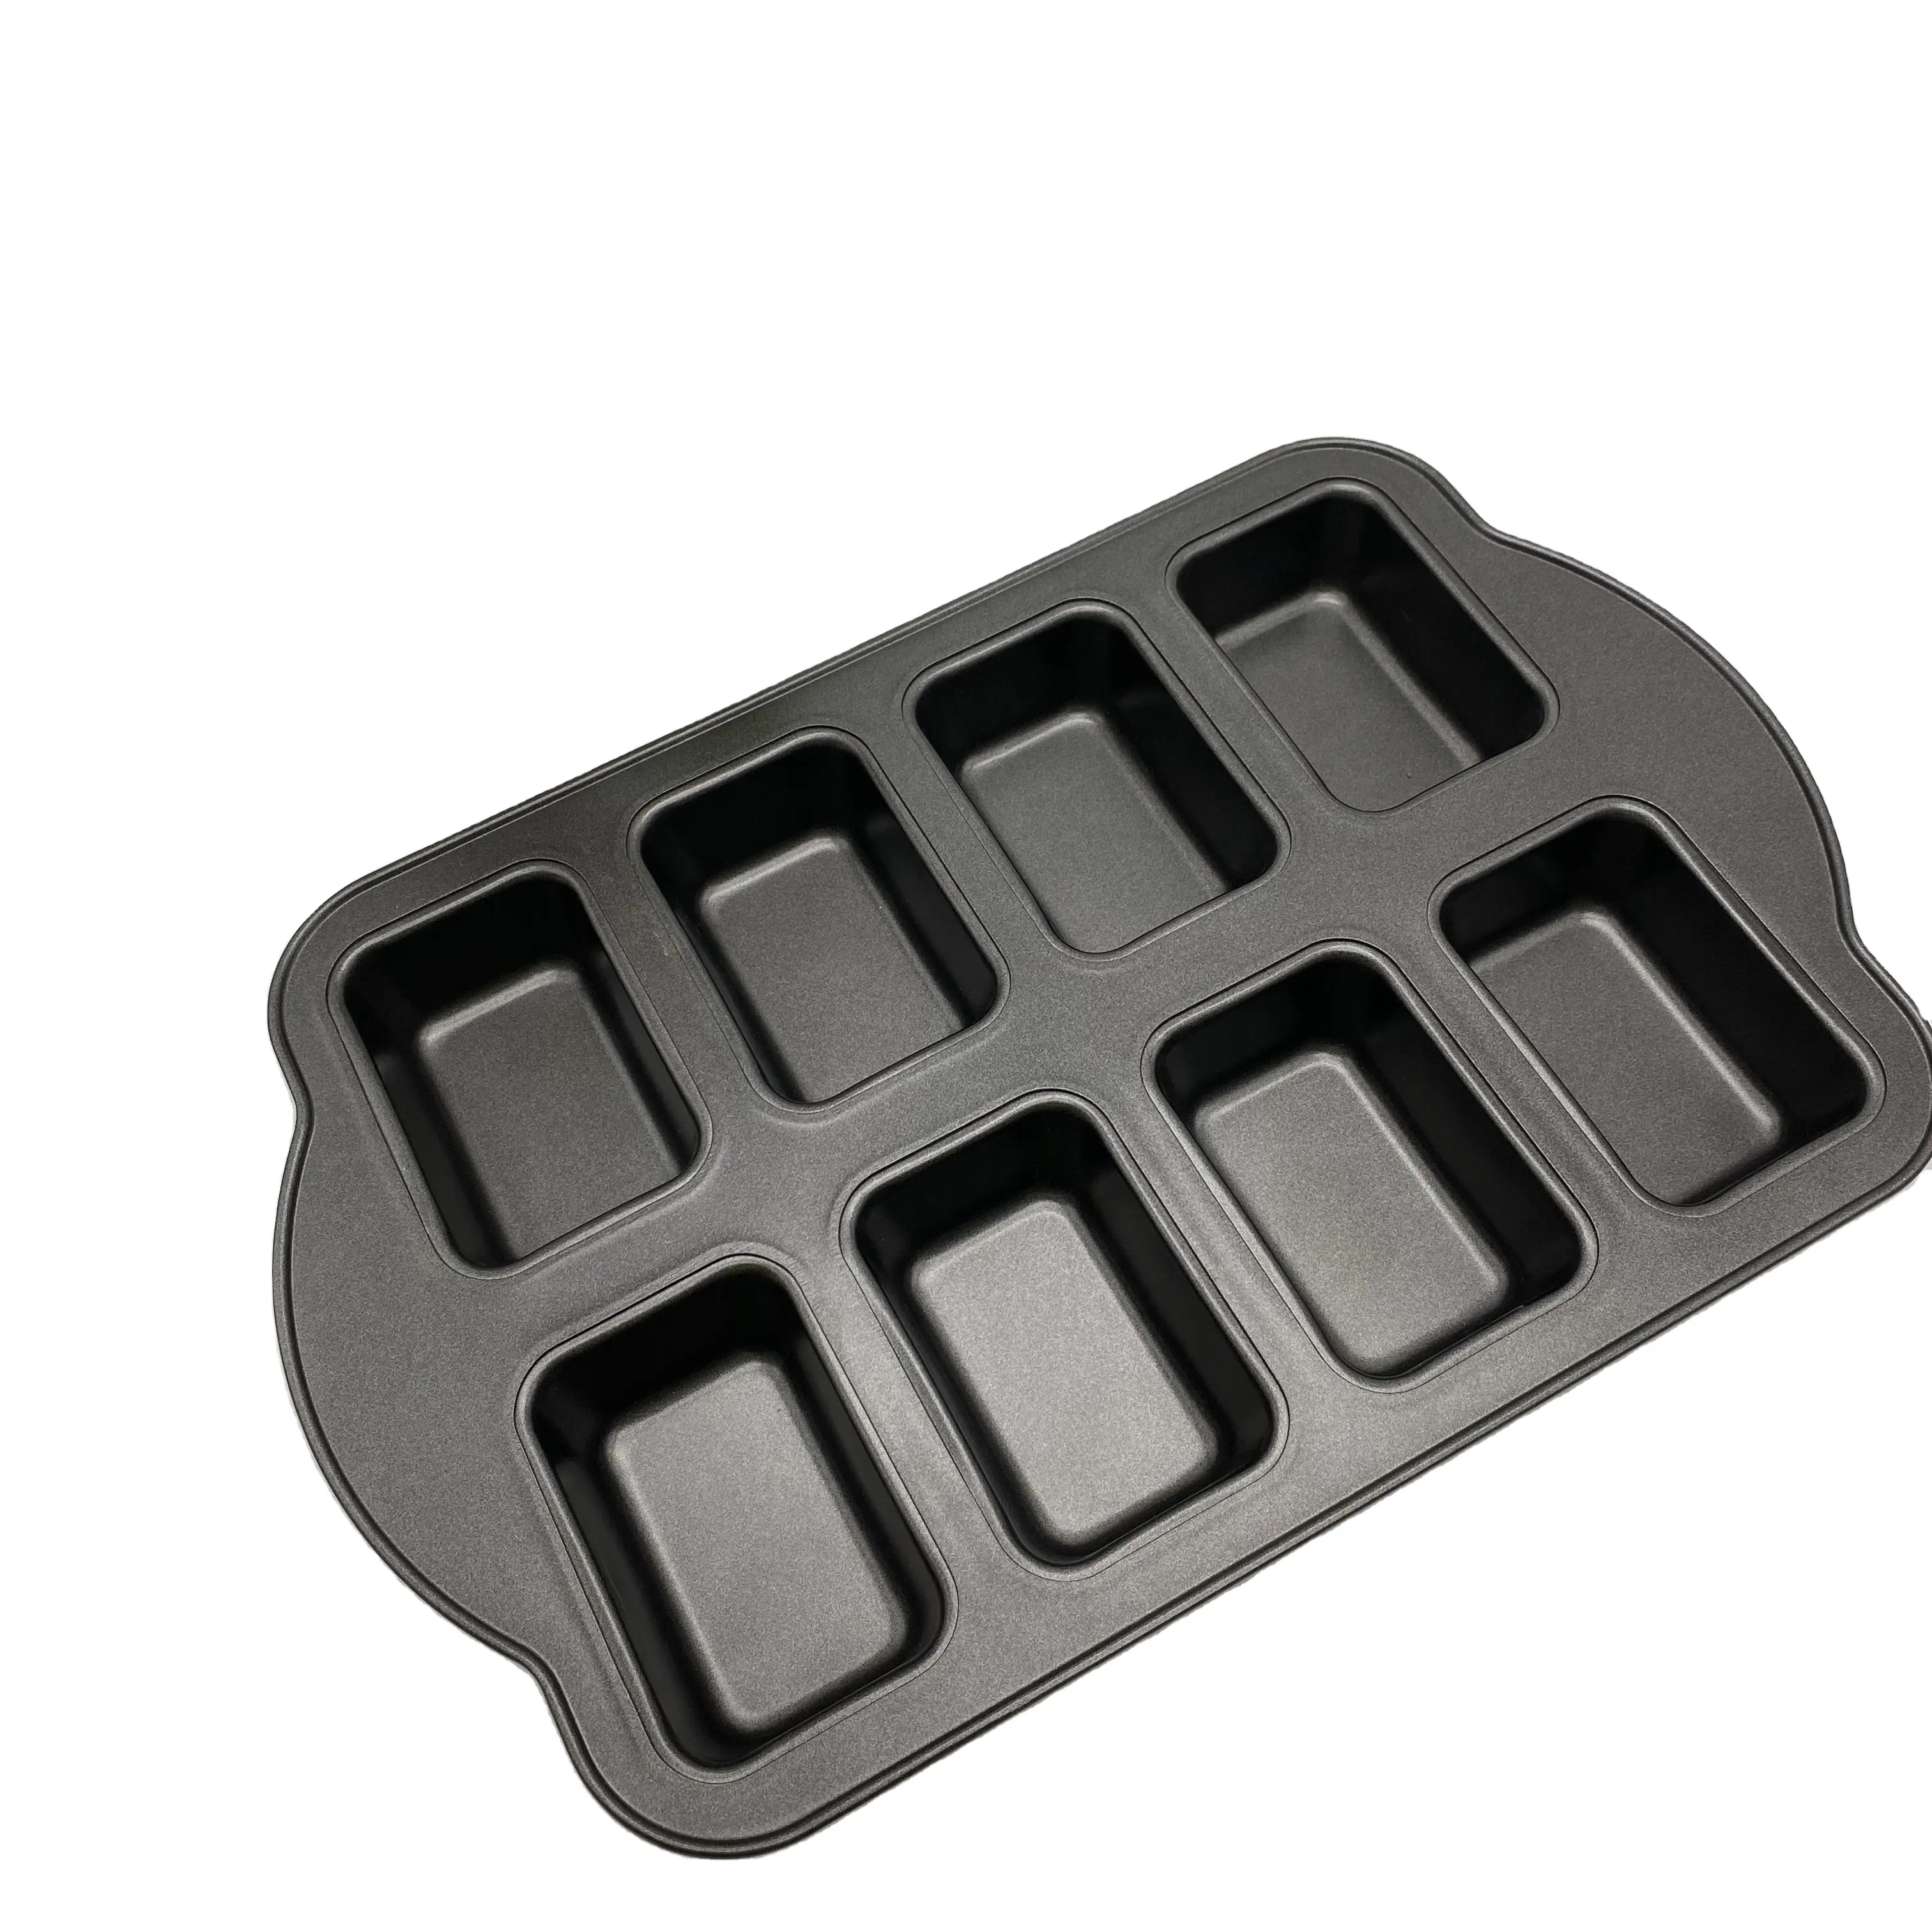 Bandeja de metal para hornear, utensilio rectangular de 8 tazas, de acero al carbono, para hornear pasteles y pan